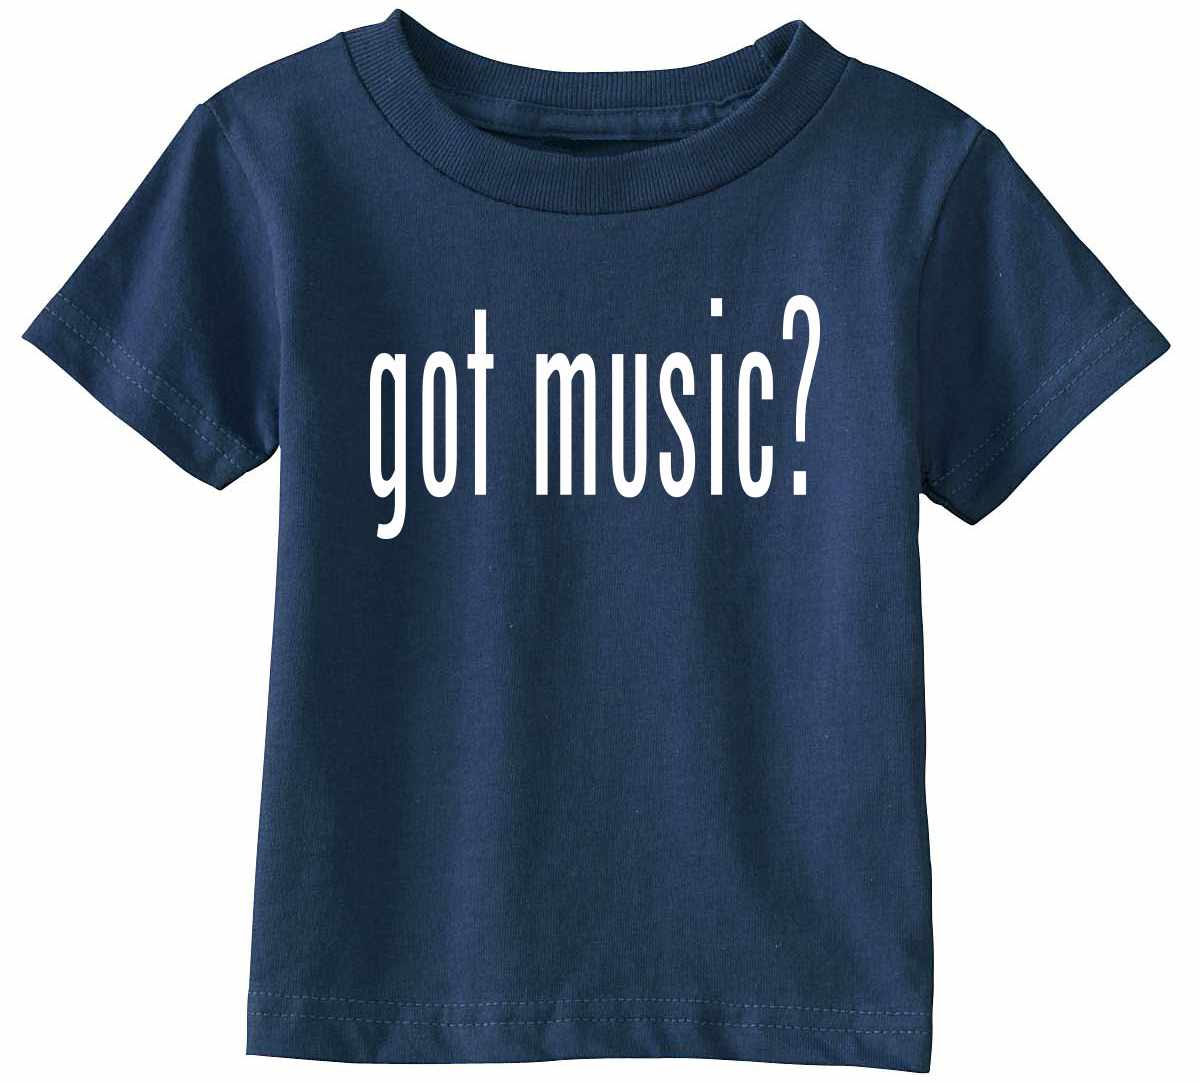 Got Music? on Infant-Toddler T-Shirt